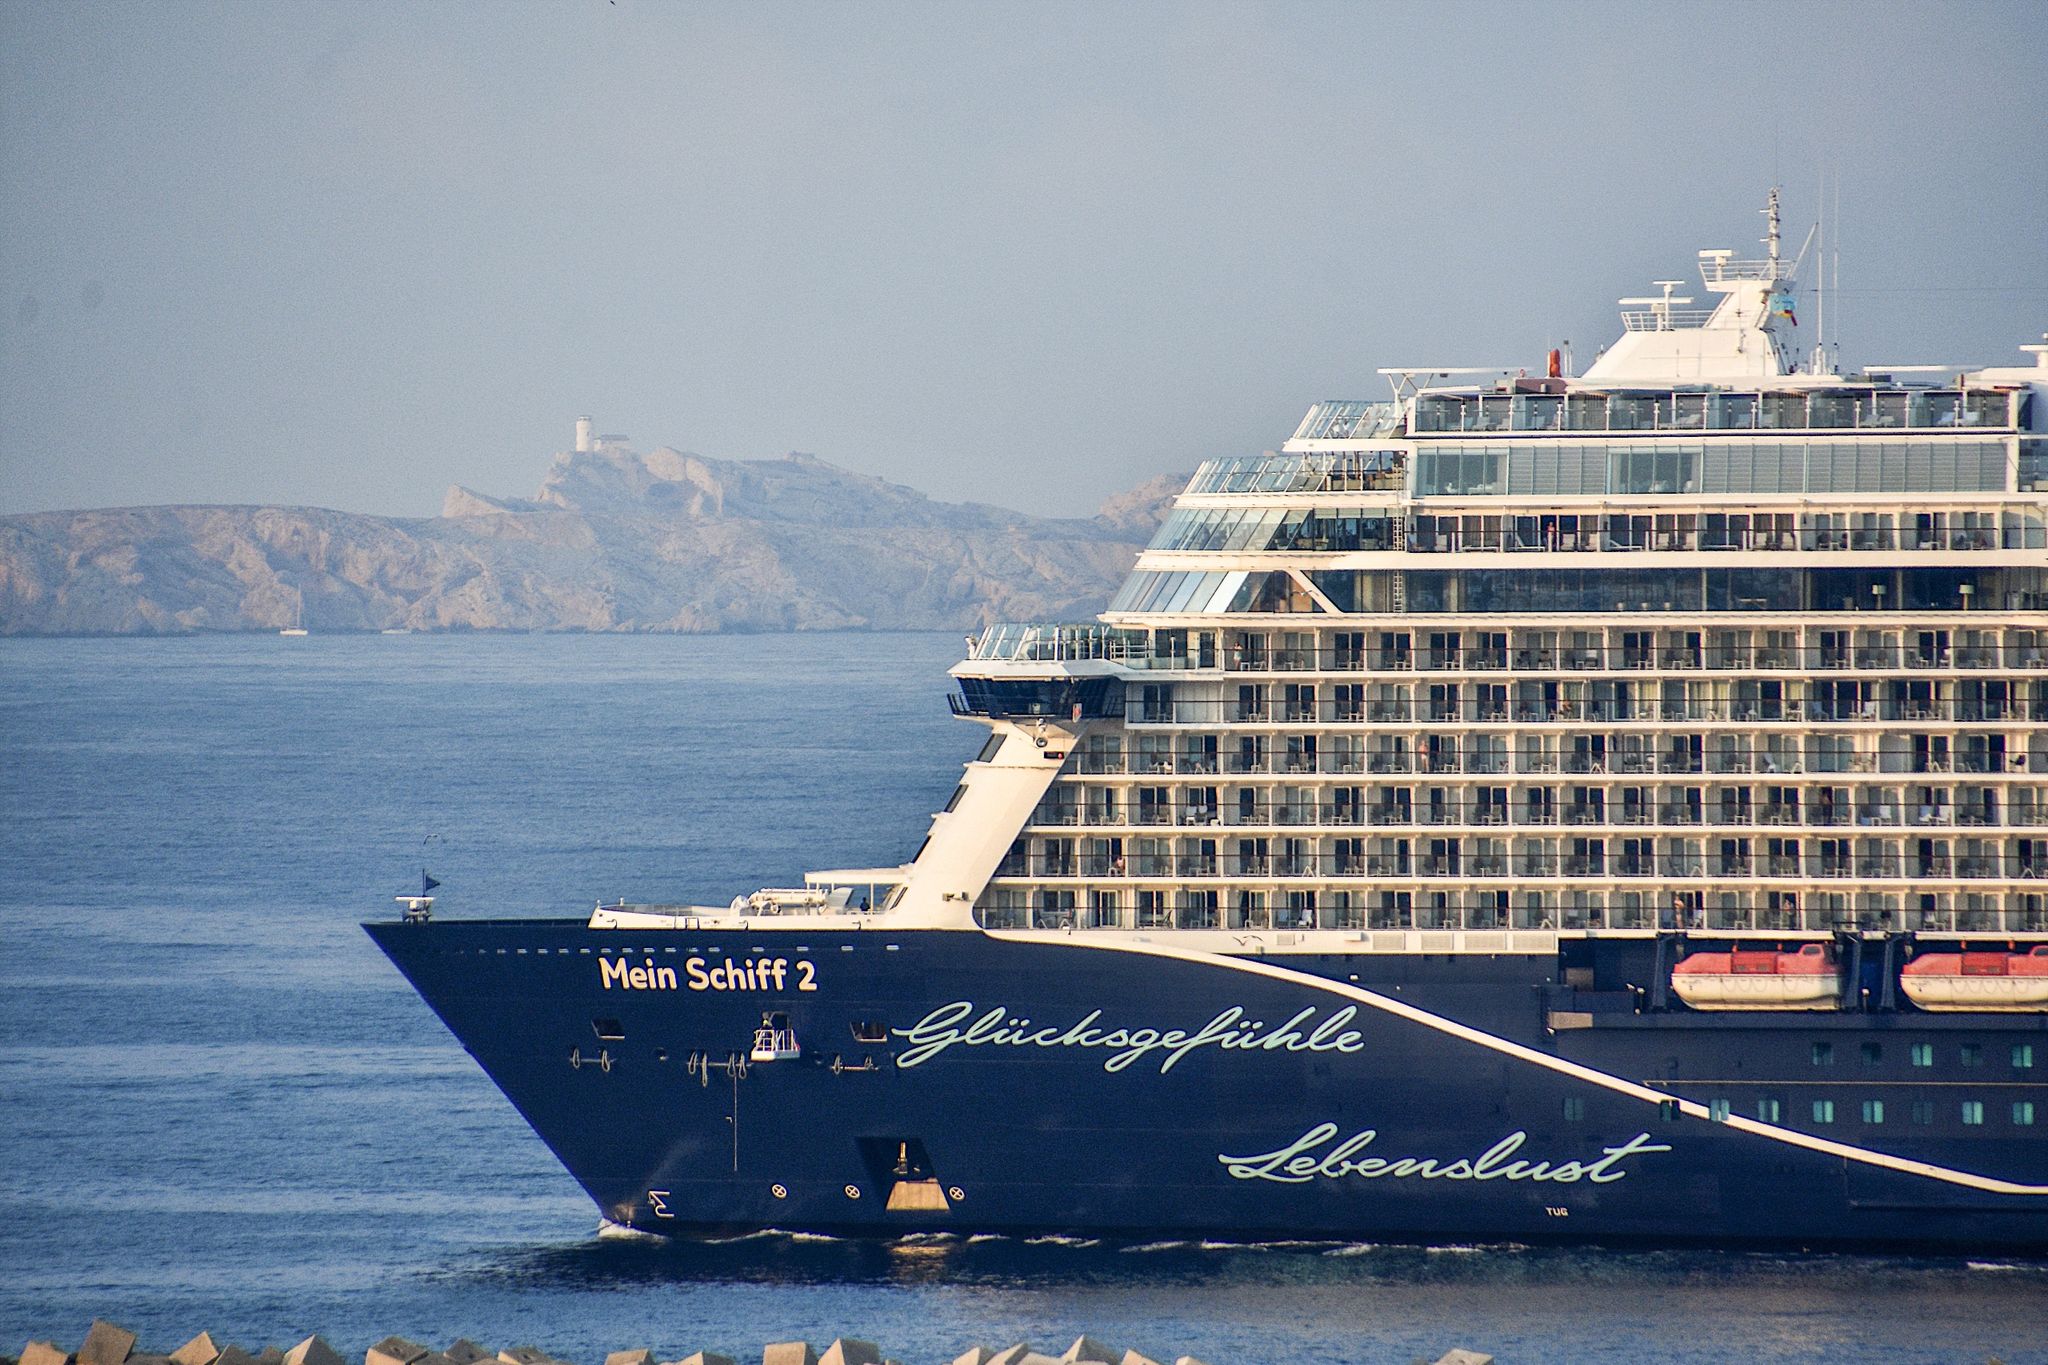 Das Kreuzfahrtschiff "Mein Schiff 2" von TUI Cruises läuft in den französischen Mittelmeerhafen Marseille ein.